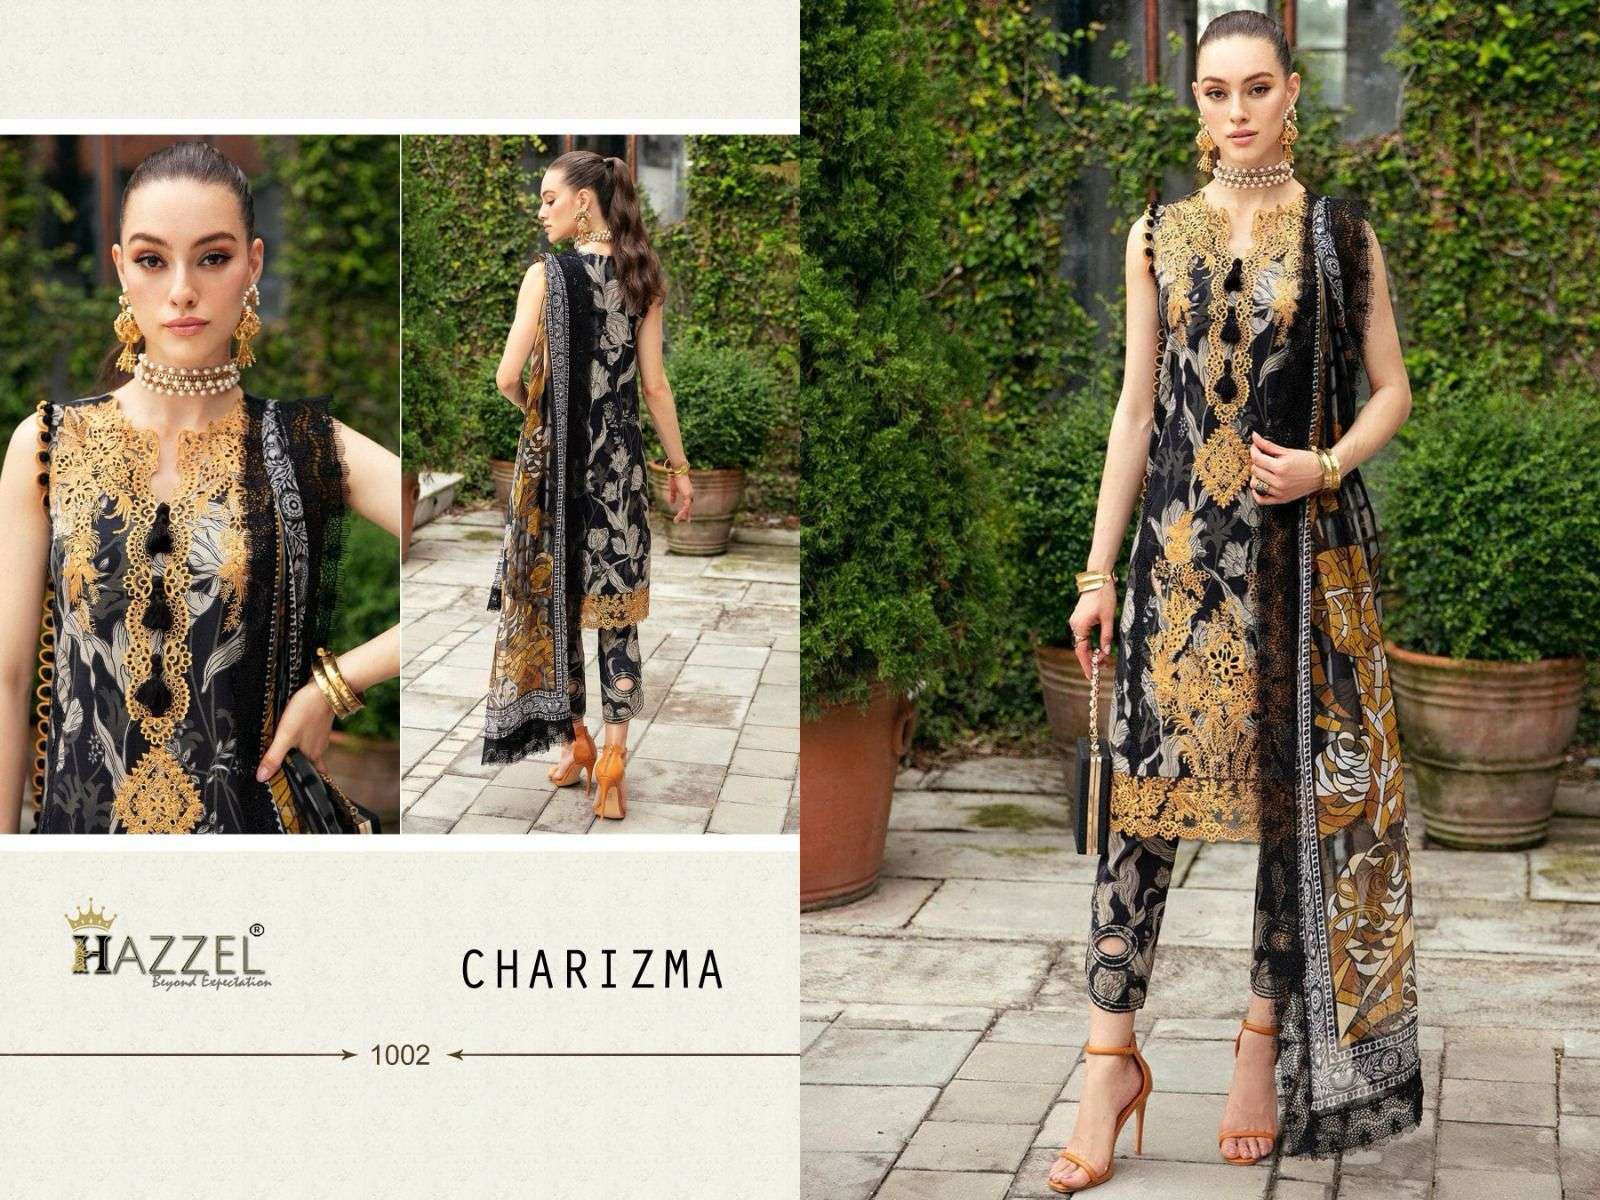 Hazzel Charizma Chiffon Dupatta Pakistani Suits Wholesale catalog